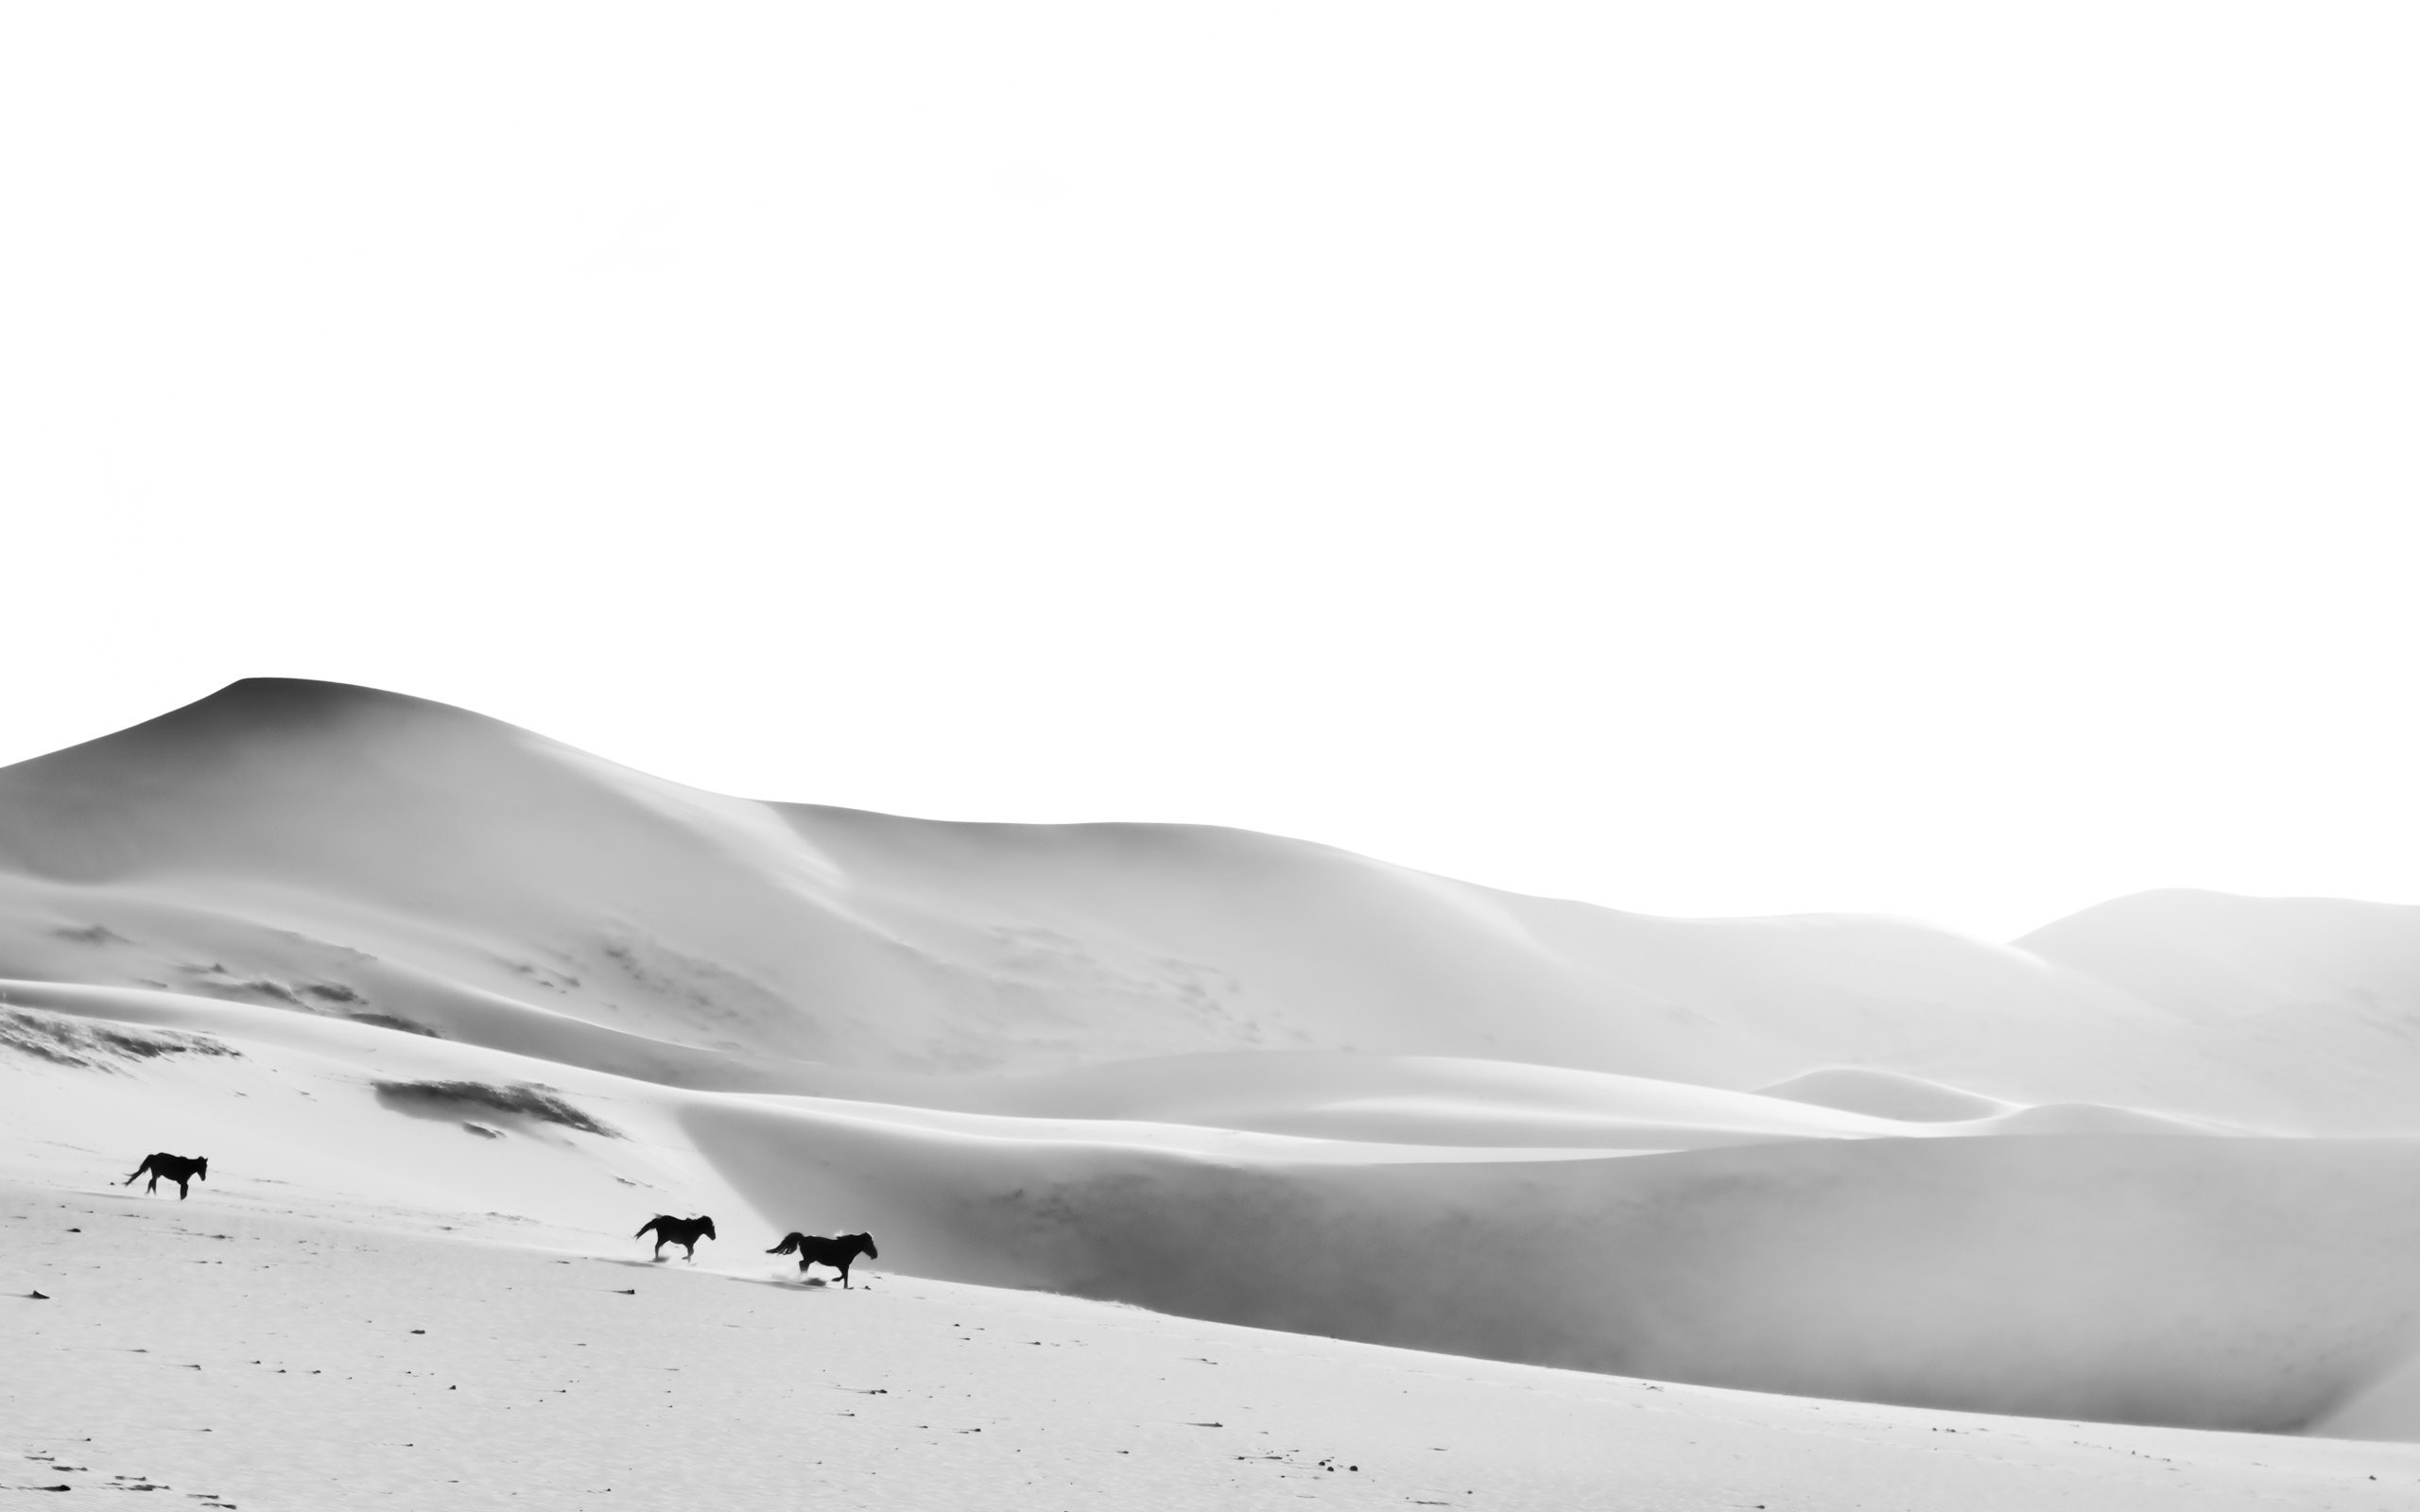 General 2560x1600 animals landscape nature monochrome dunes horse